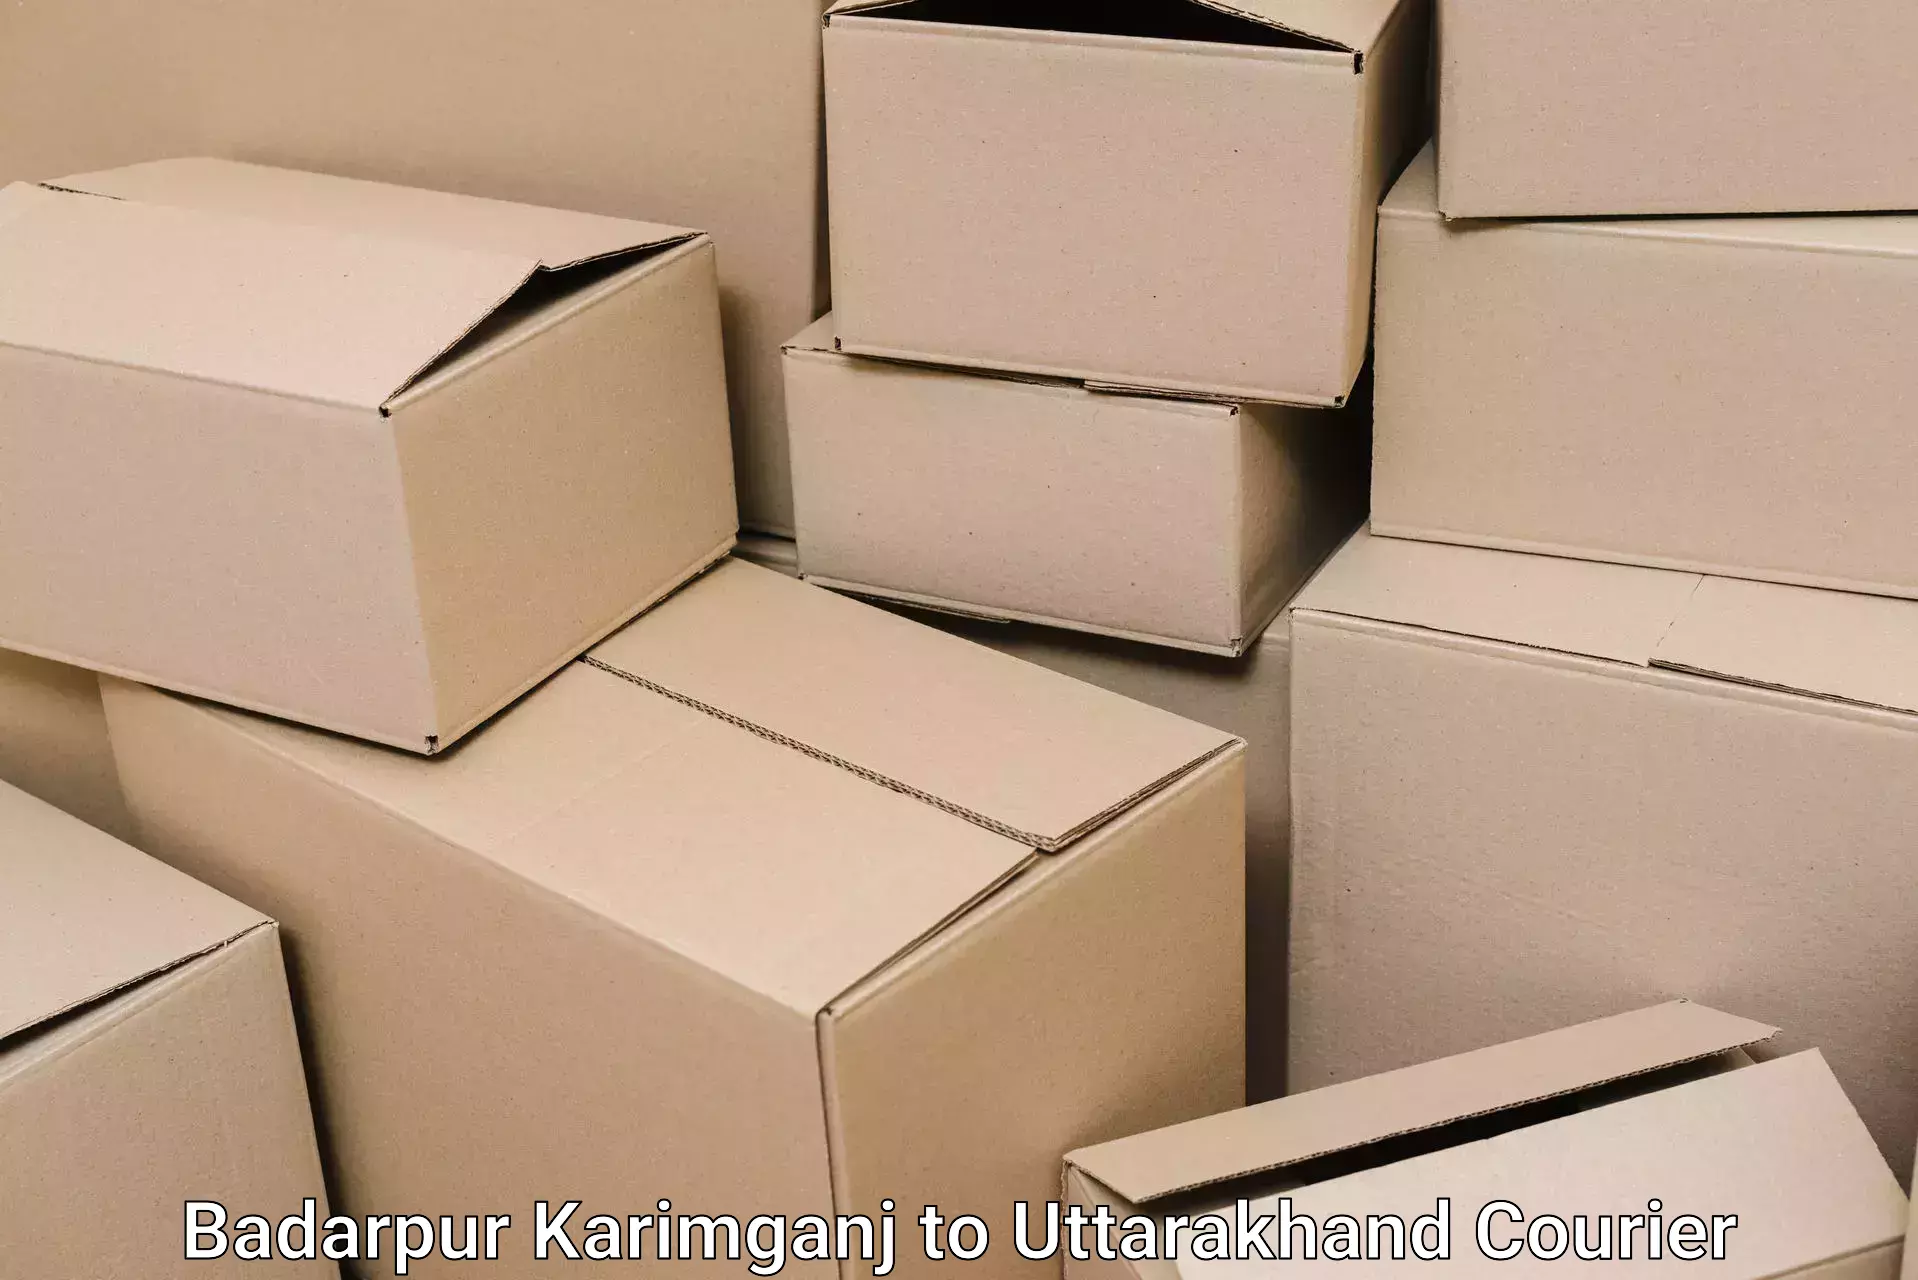 Efficient household moving Badarpur Karimganj to Kotdwara